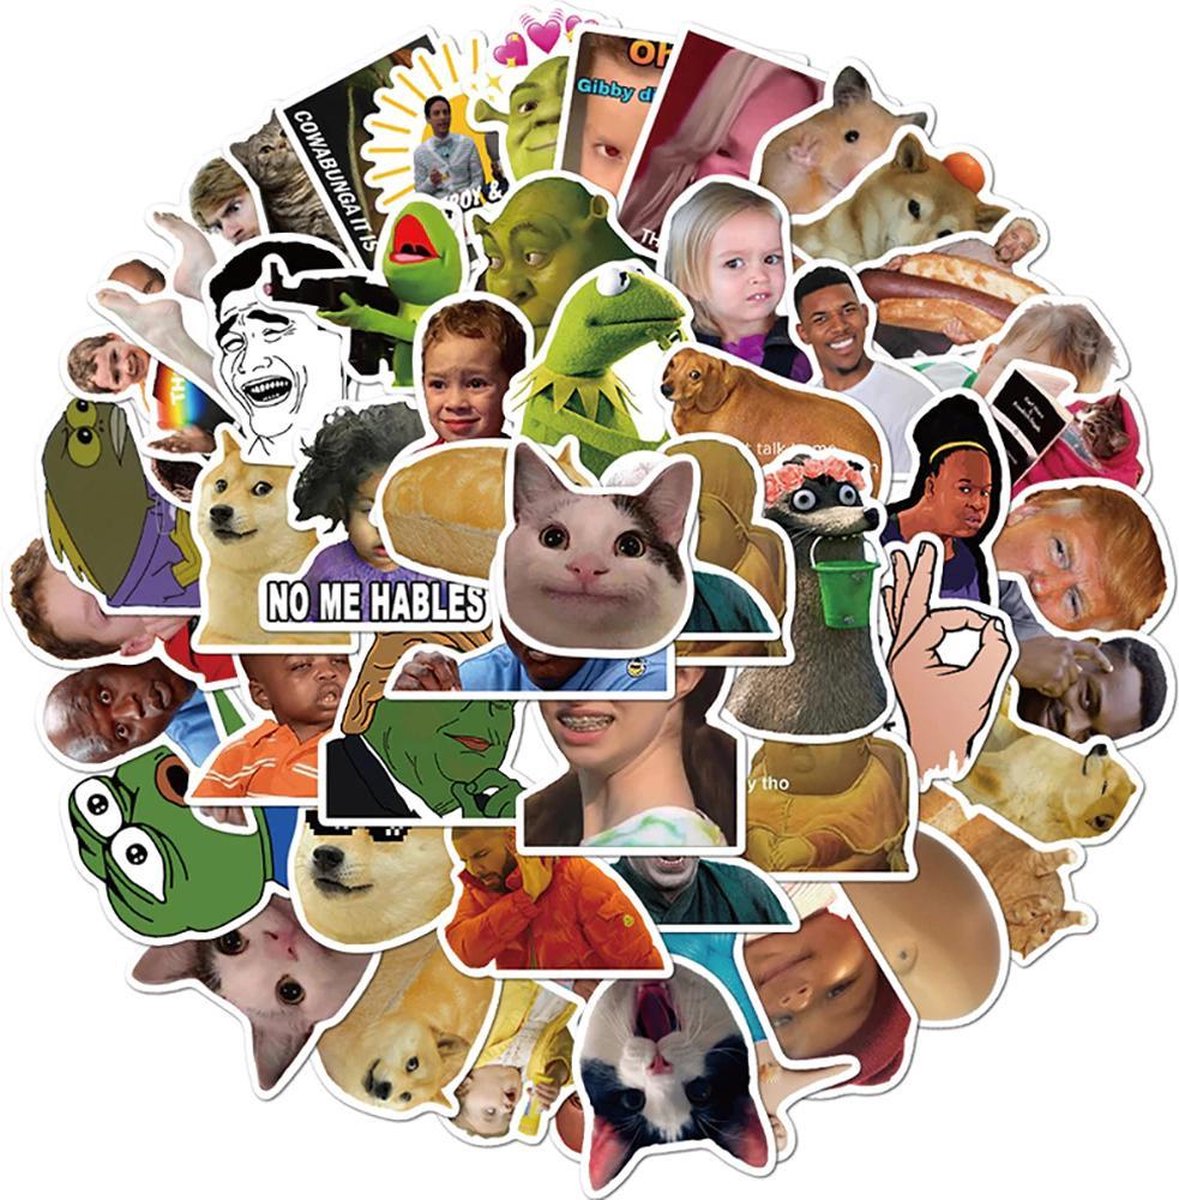 Meme stickers - 50 stuks - Grappige sticker mix met de bekentste memes op het internet - voor computer, laptop, telefoon, agenda etc. - Merkloos